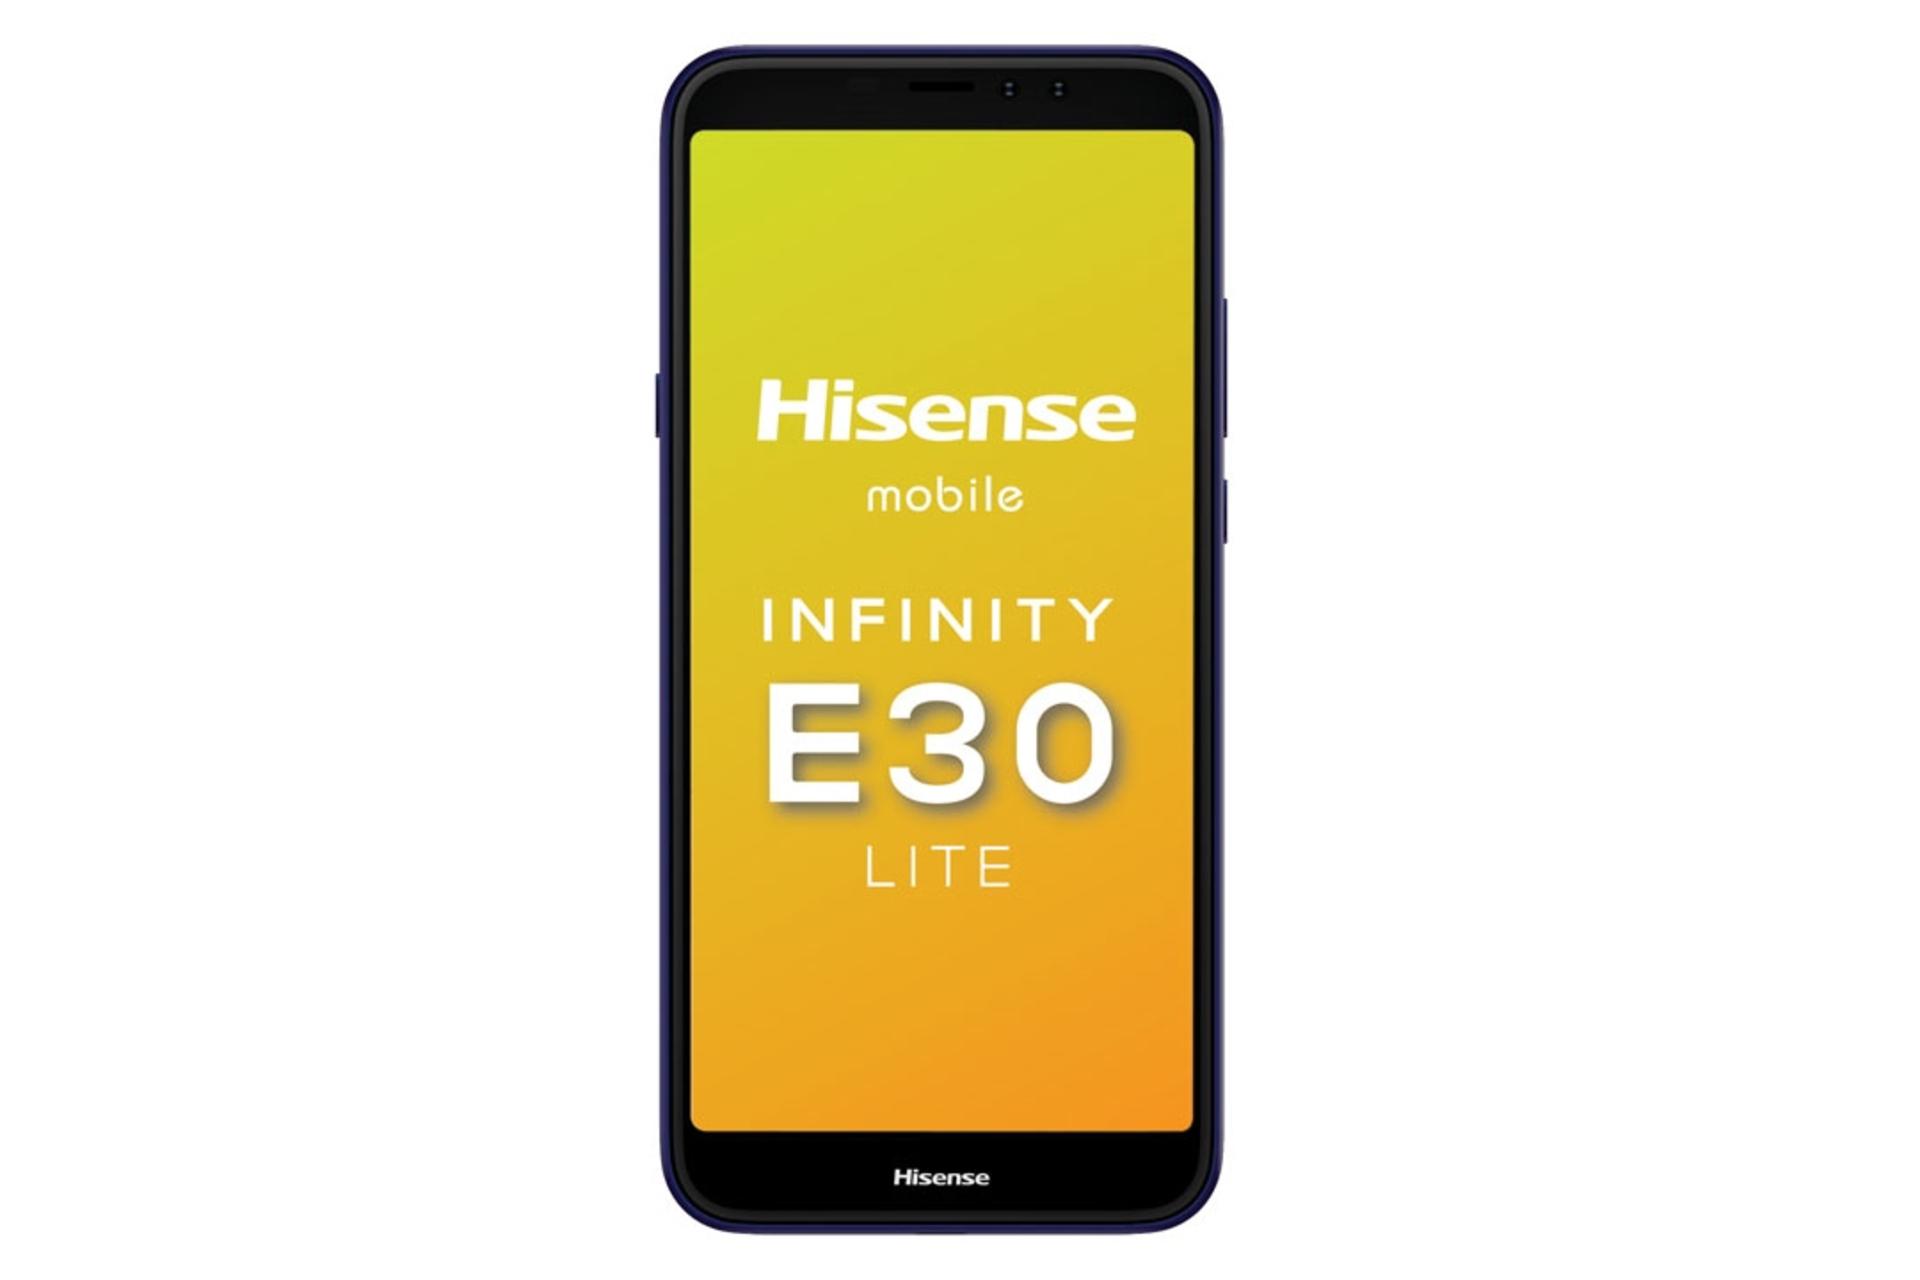 پنل جلو گوشی موبایل هایسنس Hisense E30 Lite